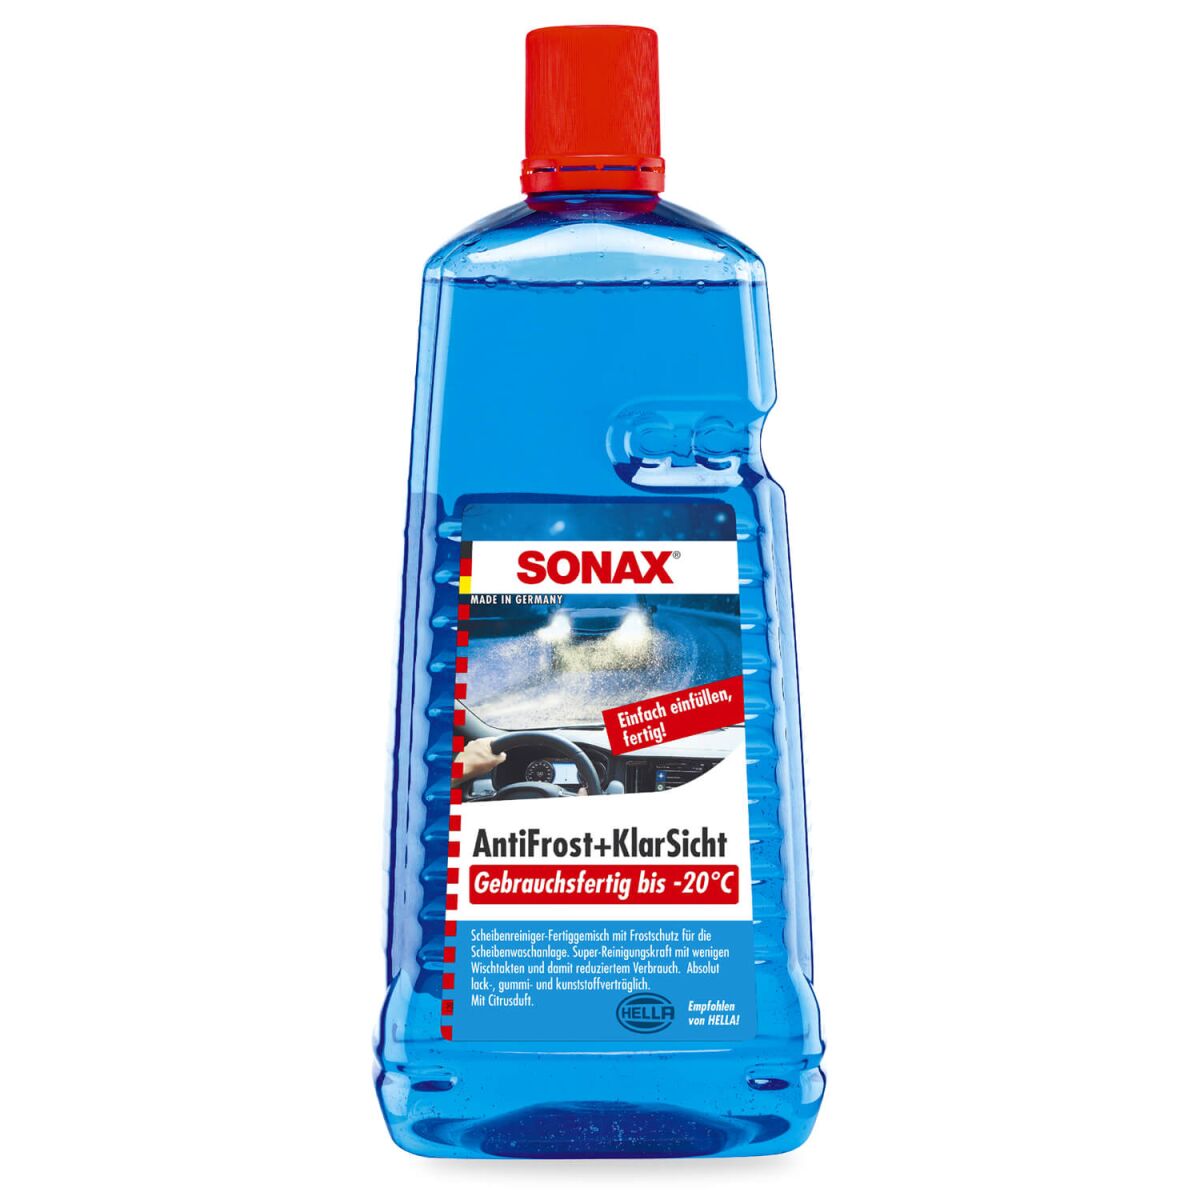 SONAX ScheibenEnteiser, Trigger à 500 ml